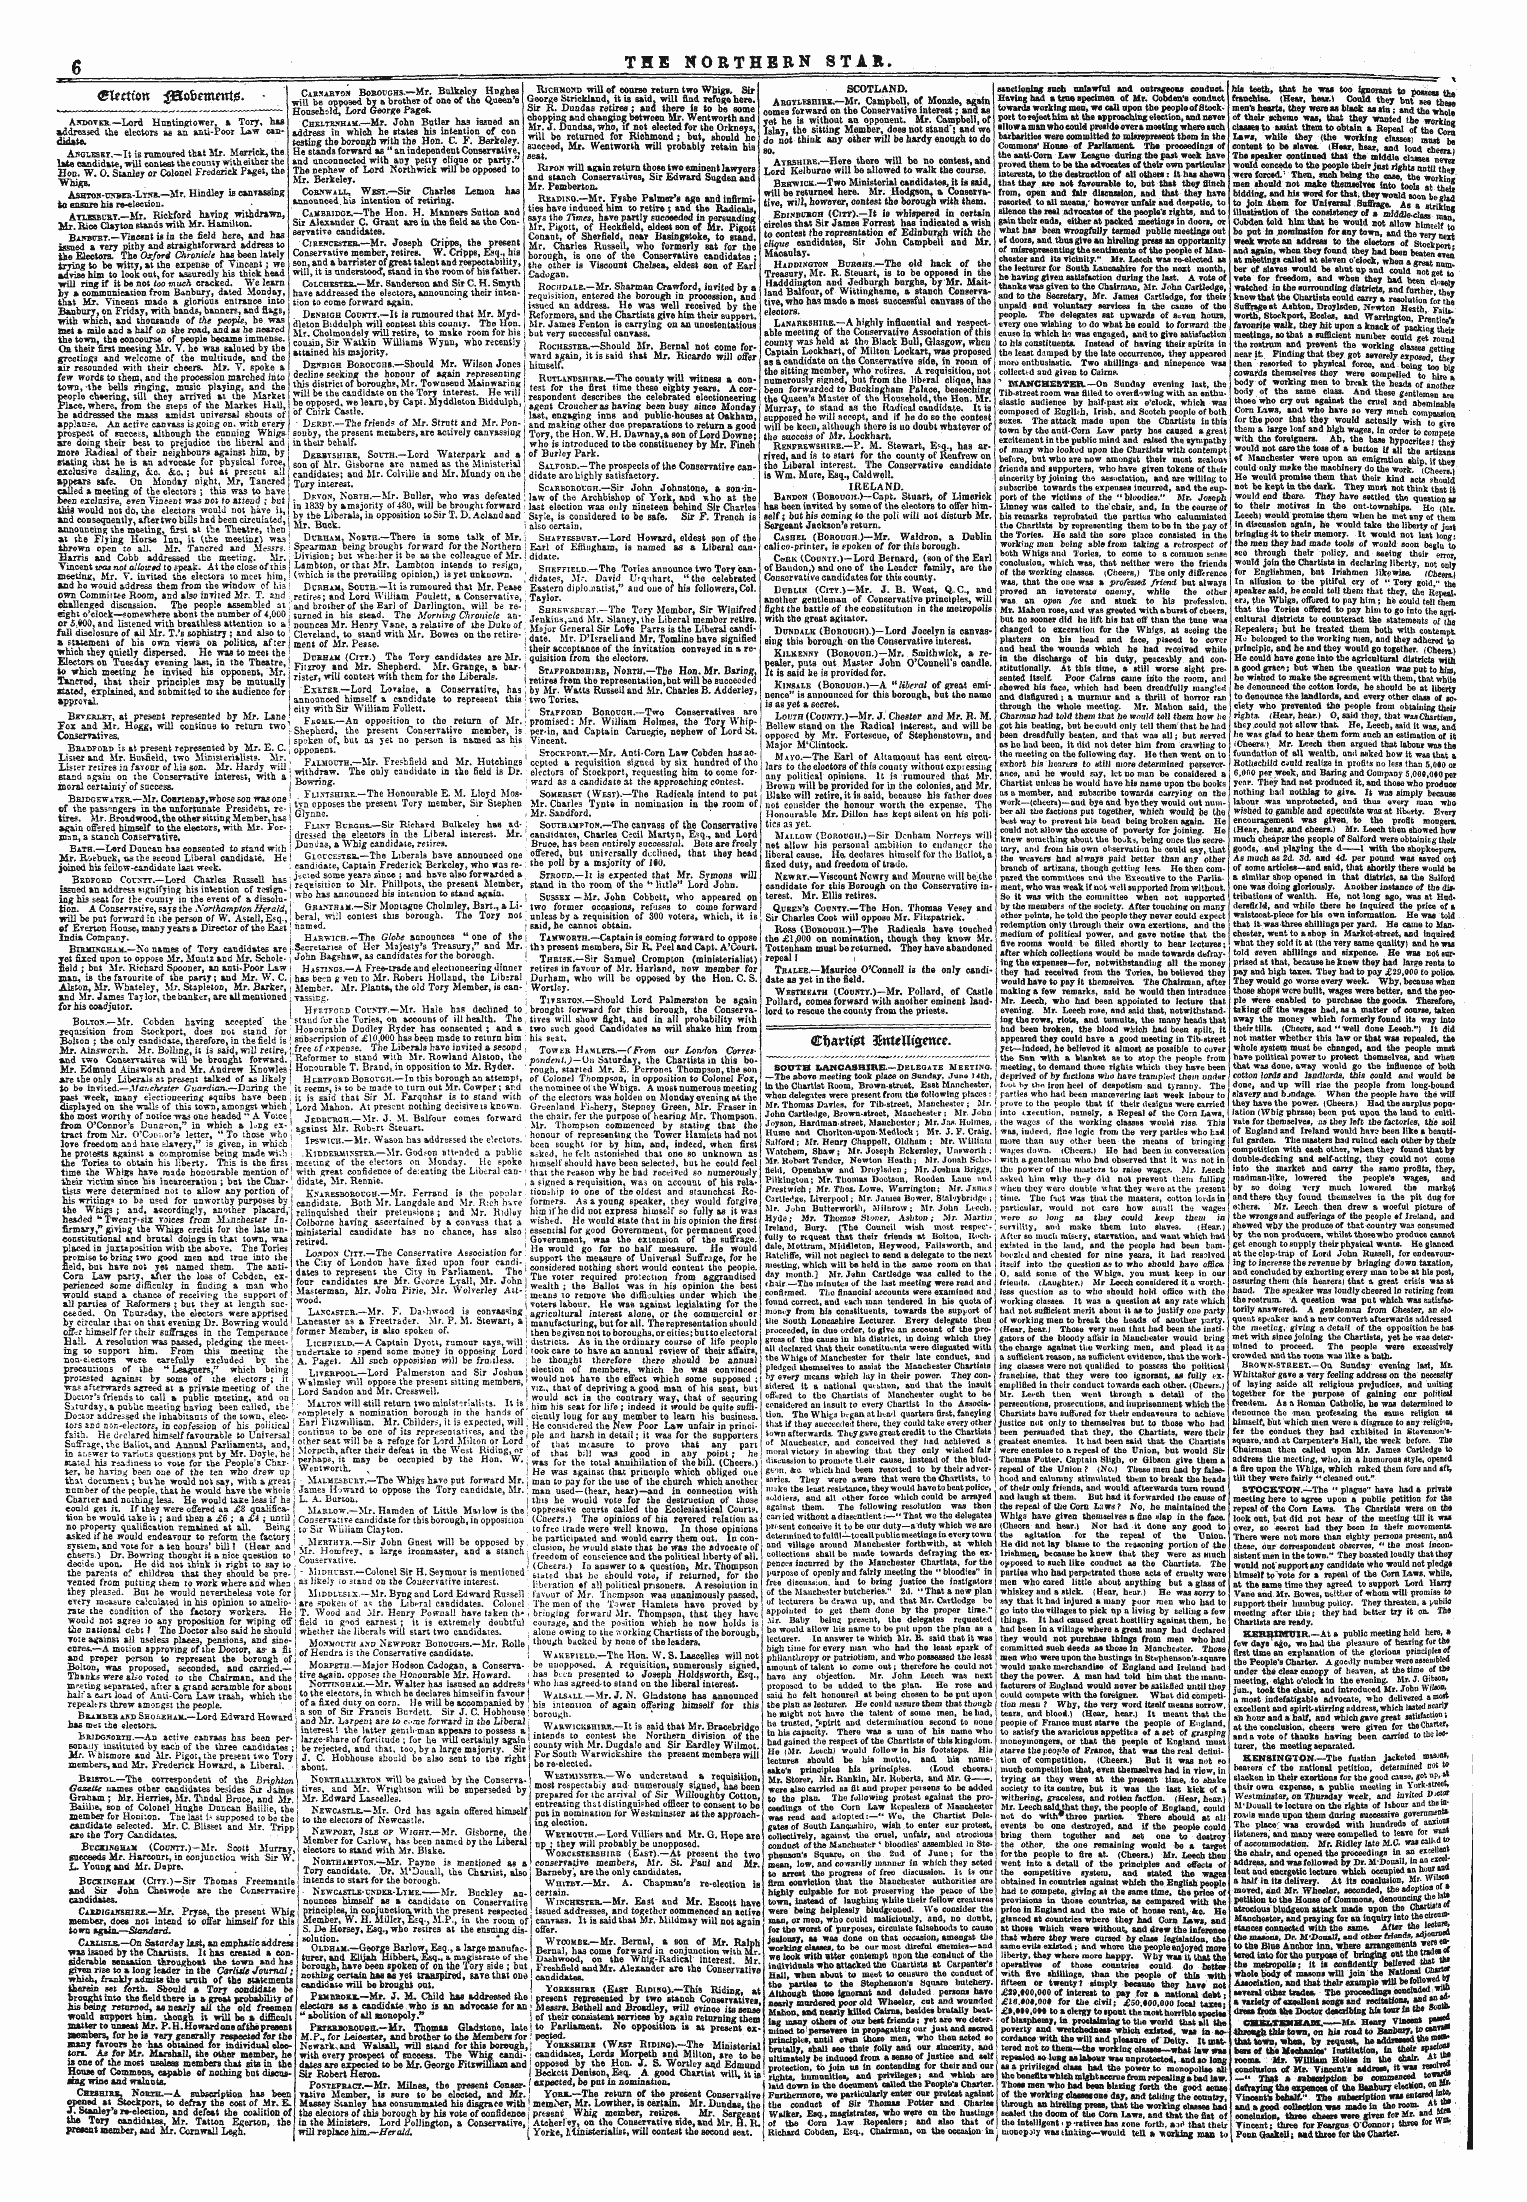 Northern Star (1837-1852): jS F Y, 3rd edition - Guttten ^Bofcetnetttg.